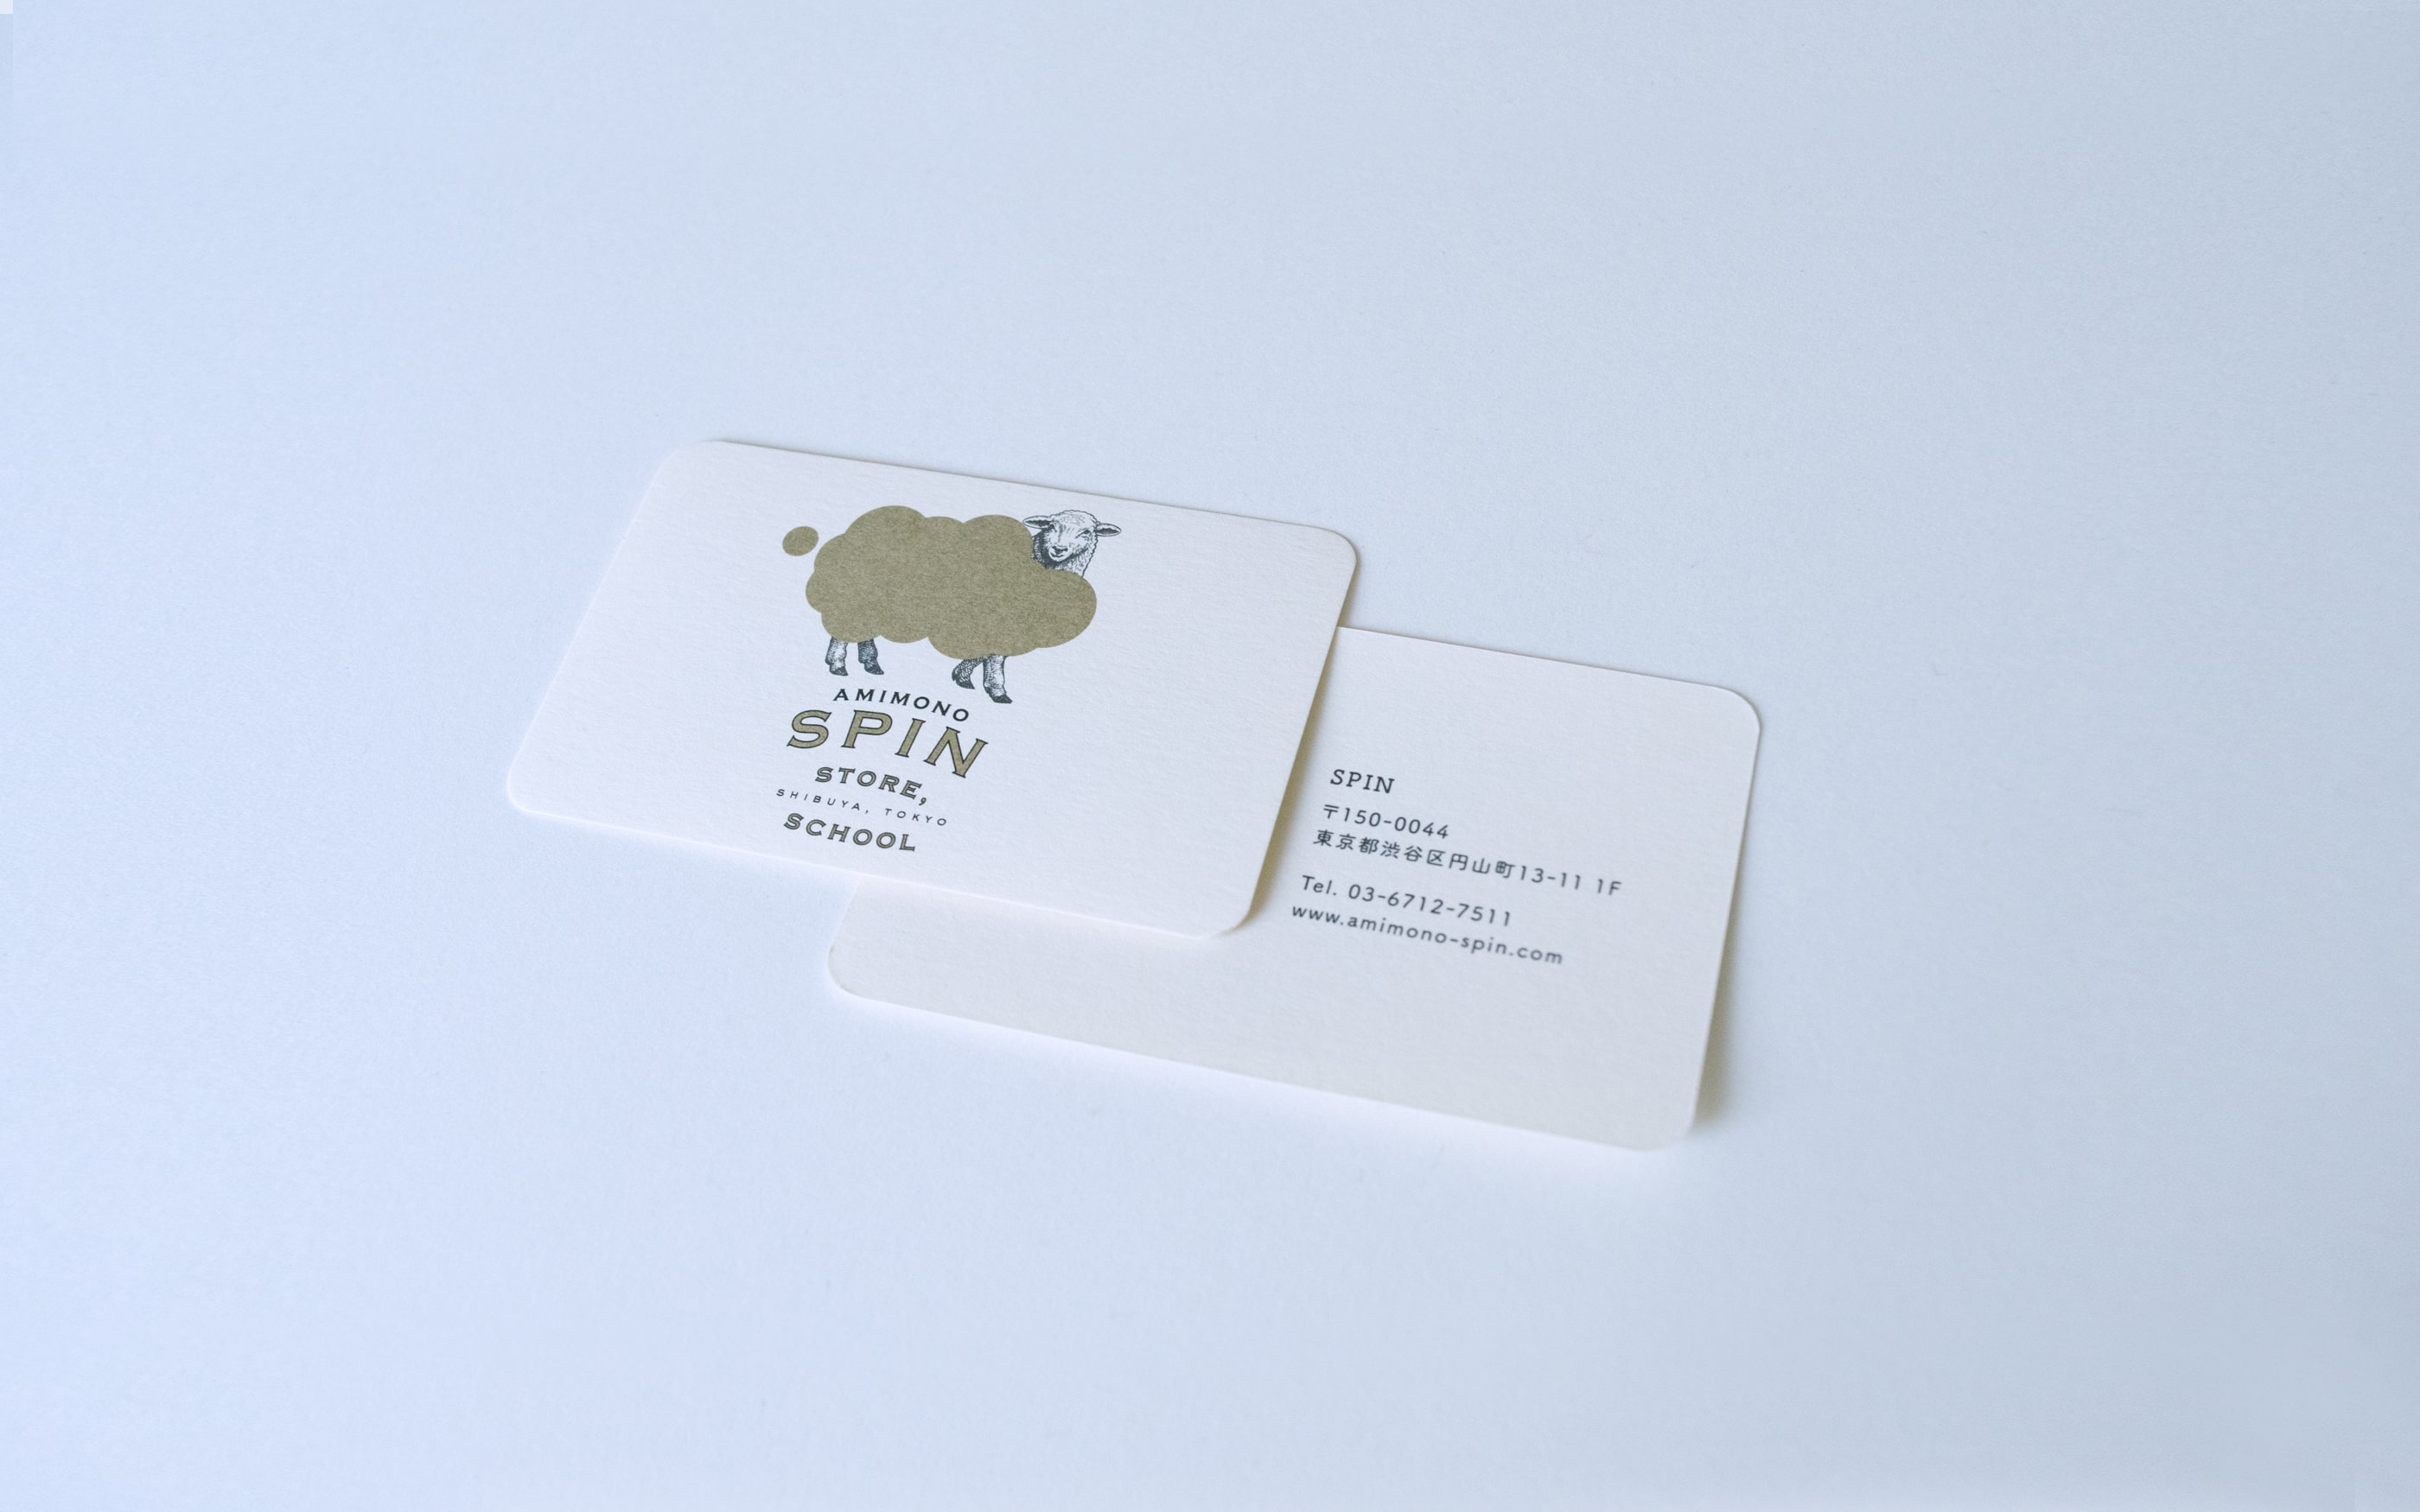 スピン businesscard, spin businesscard